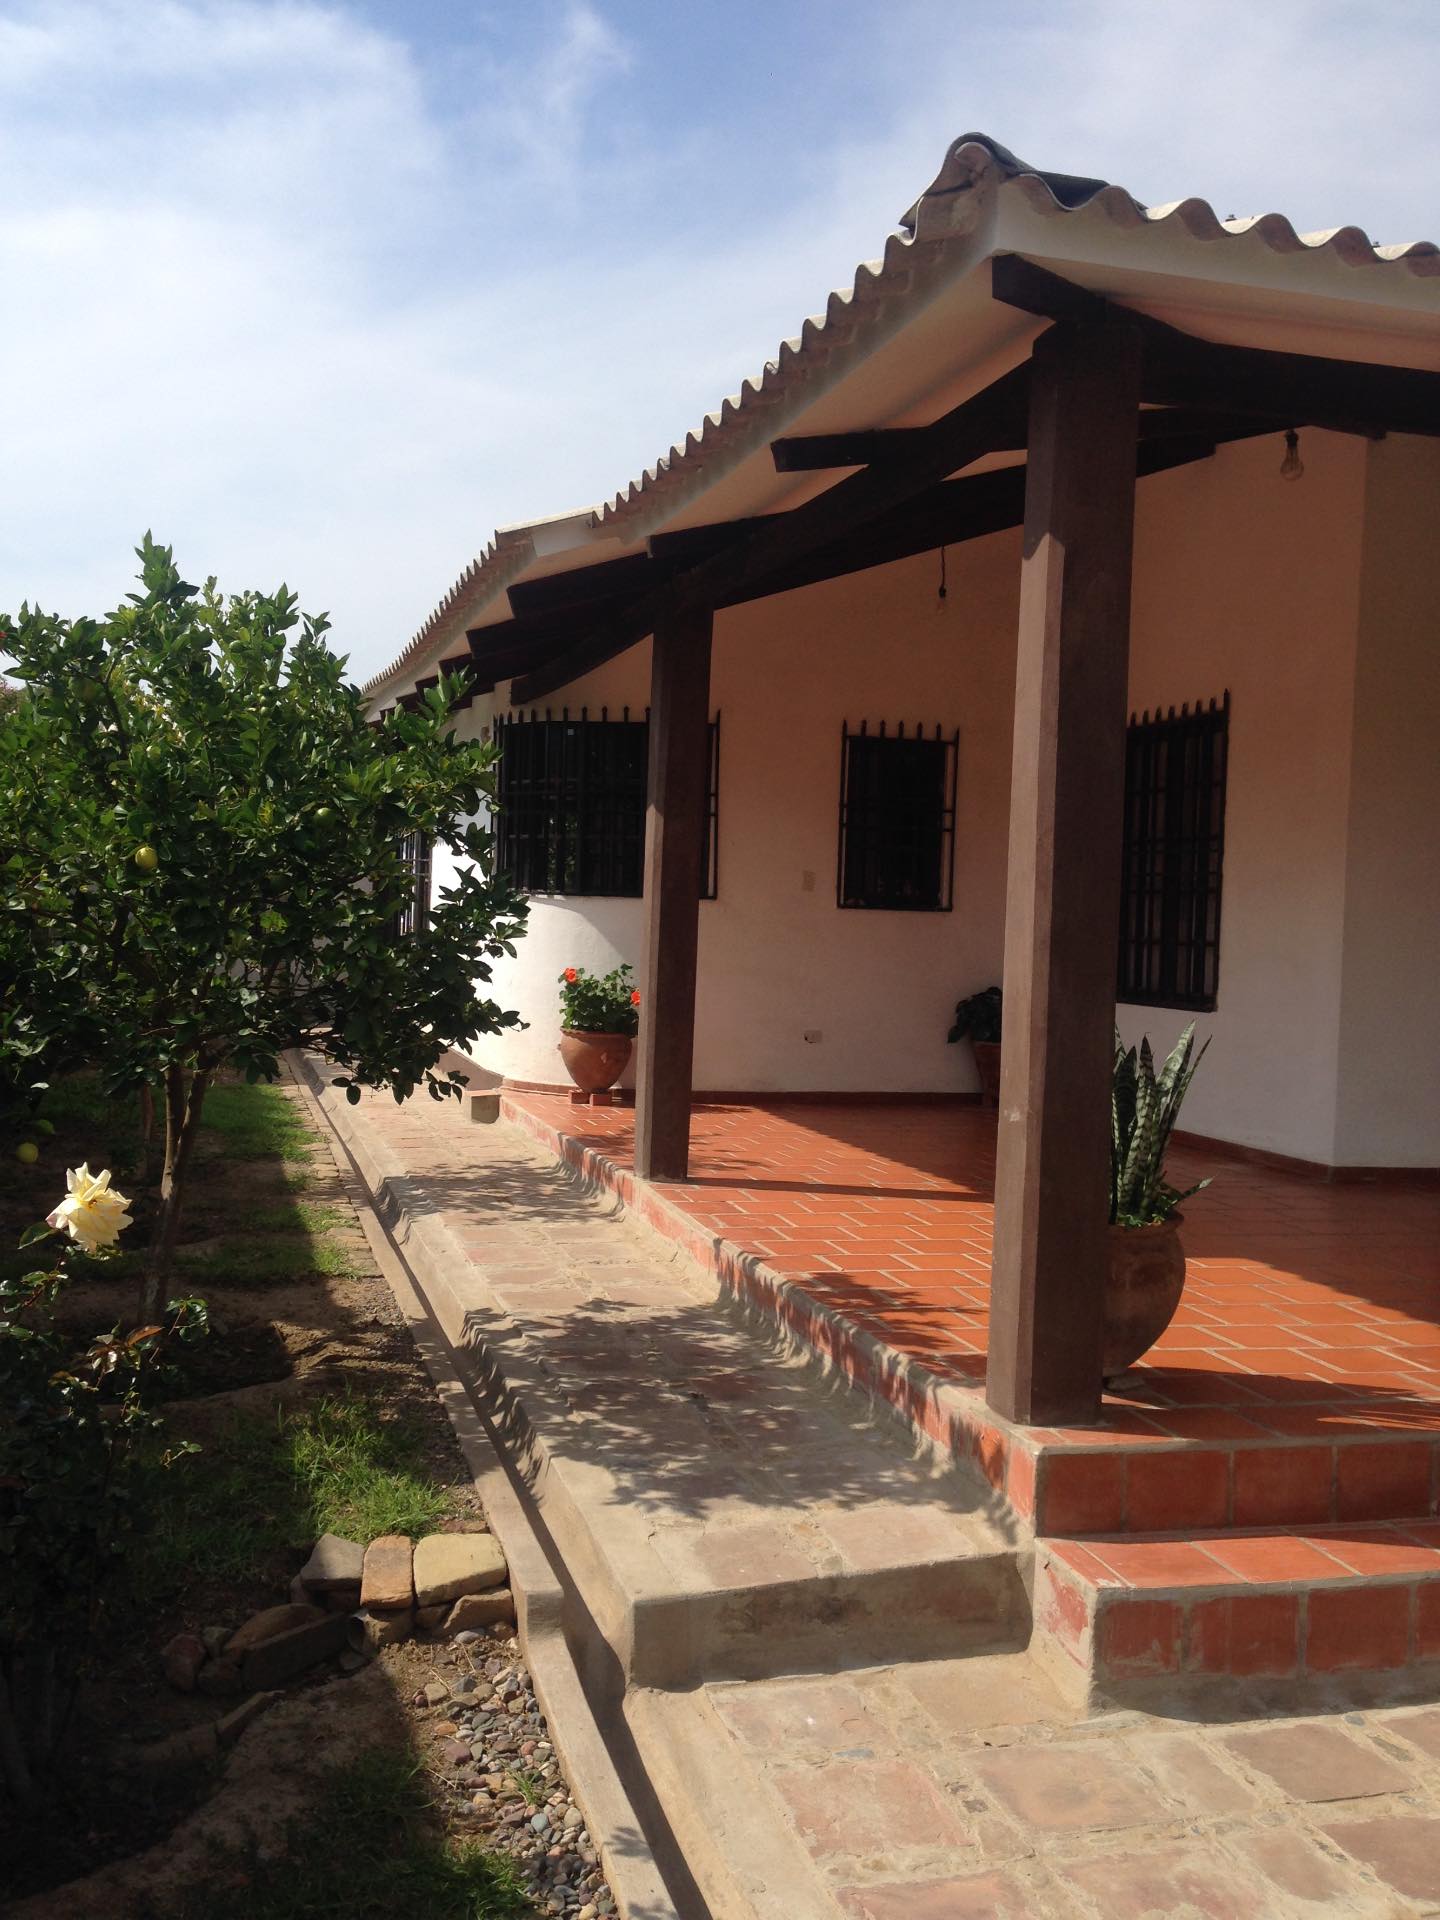 Casa en VentaMolle Mayu a 20 minutos de Sucre camino al aeropuerto de Alcantati del peaje de Cochis 2 km. A la derecha hacia Totacoa Foto 10